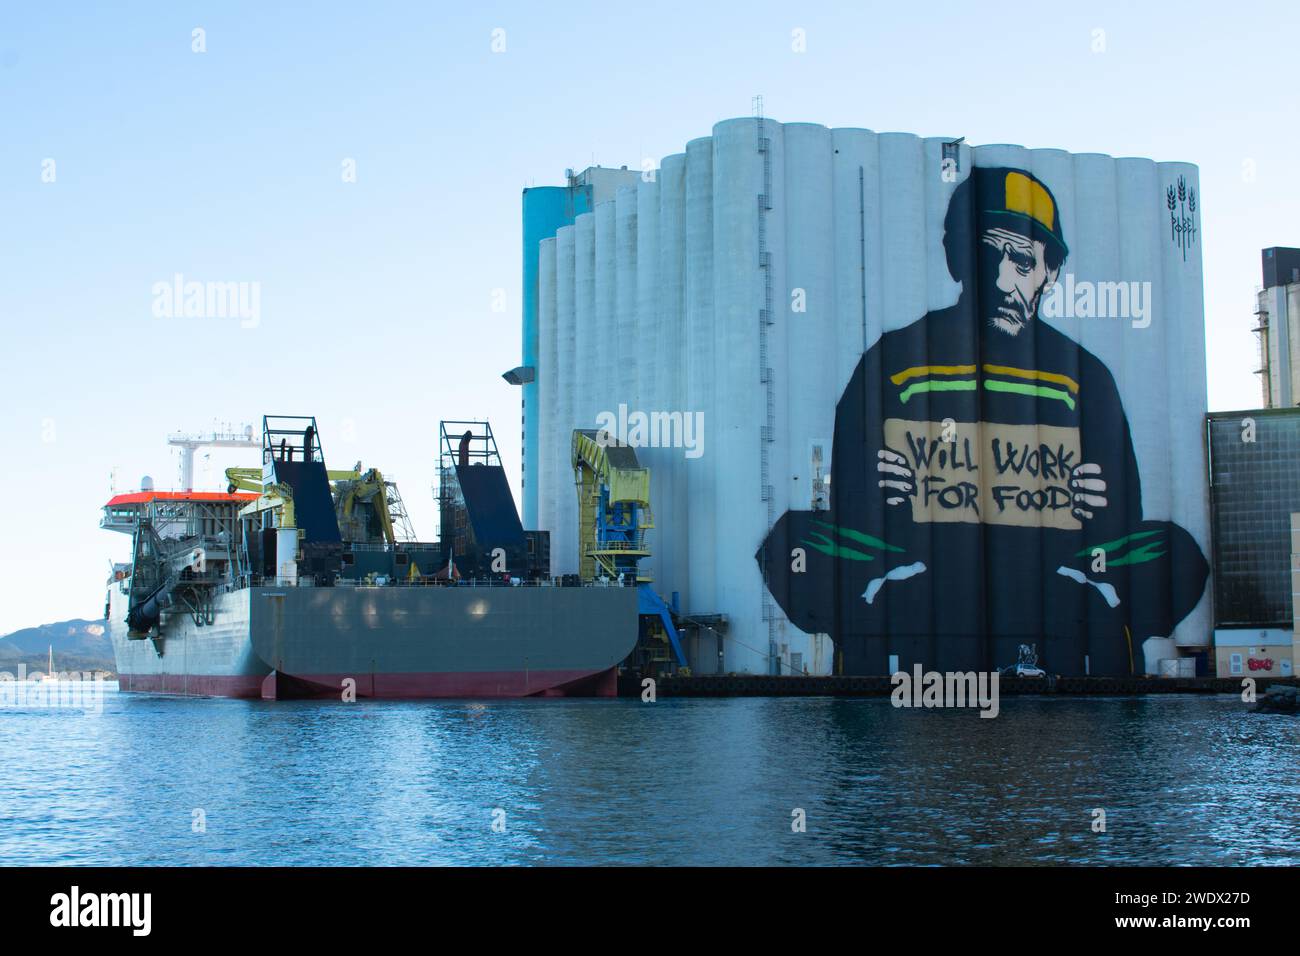 Wird für Food Graffiti funktionieren. Große Graffiti auf funktionierenden Silos neben dem Meer gemalt. Rogaland Norwegen Stockfoto